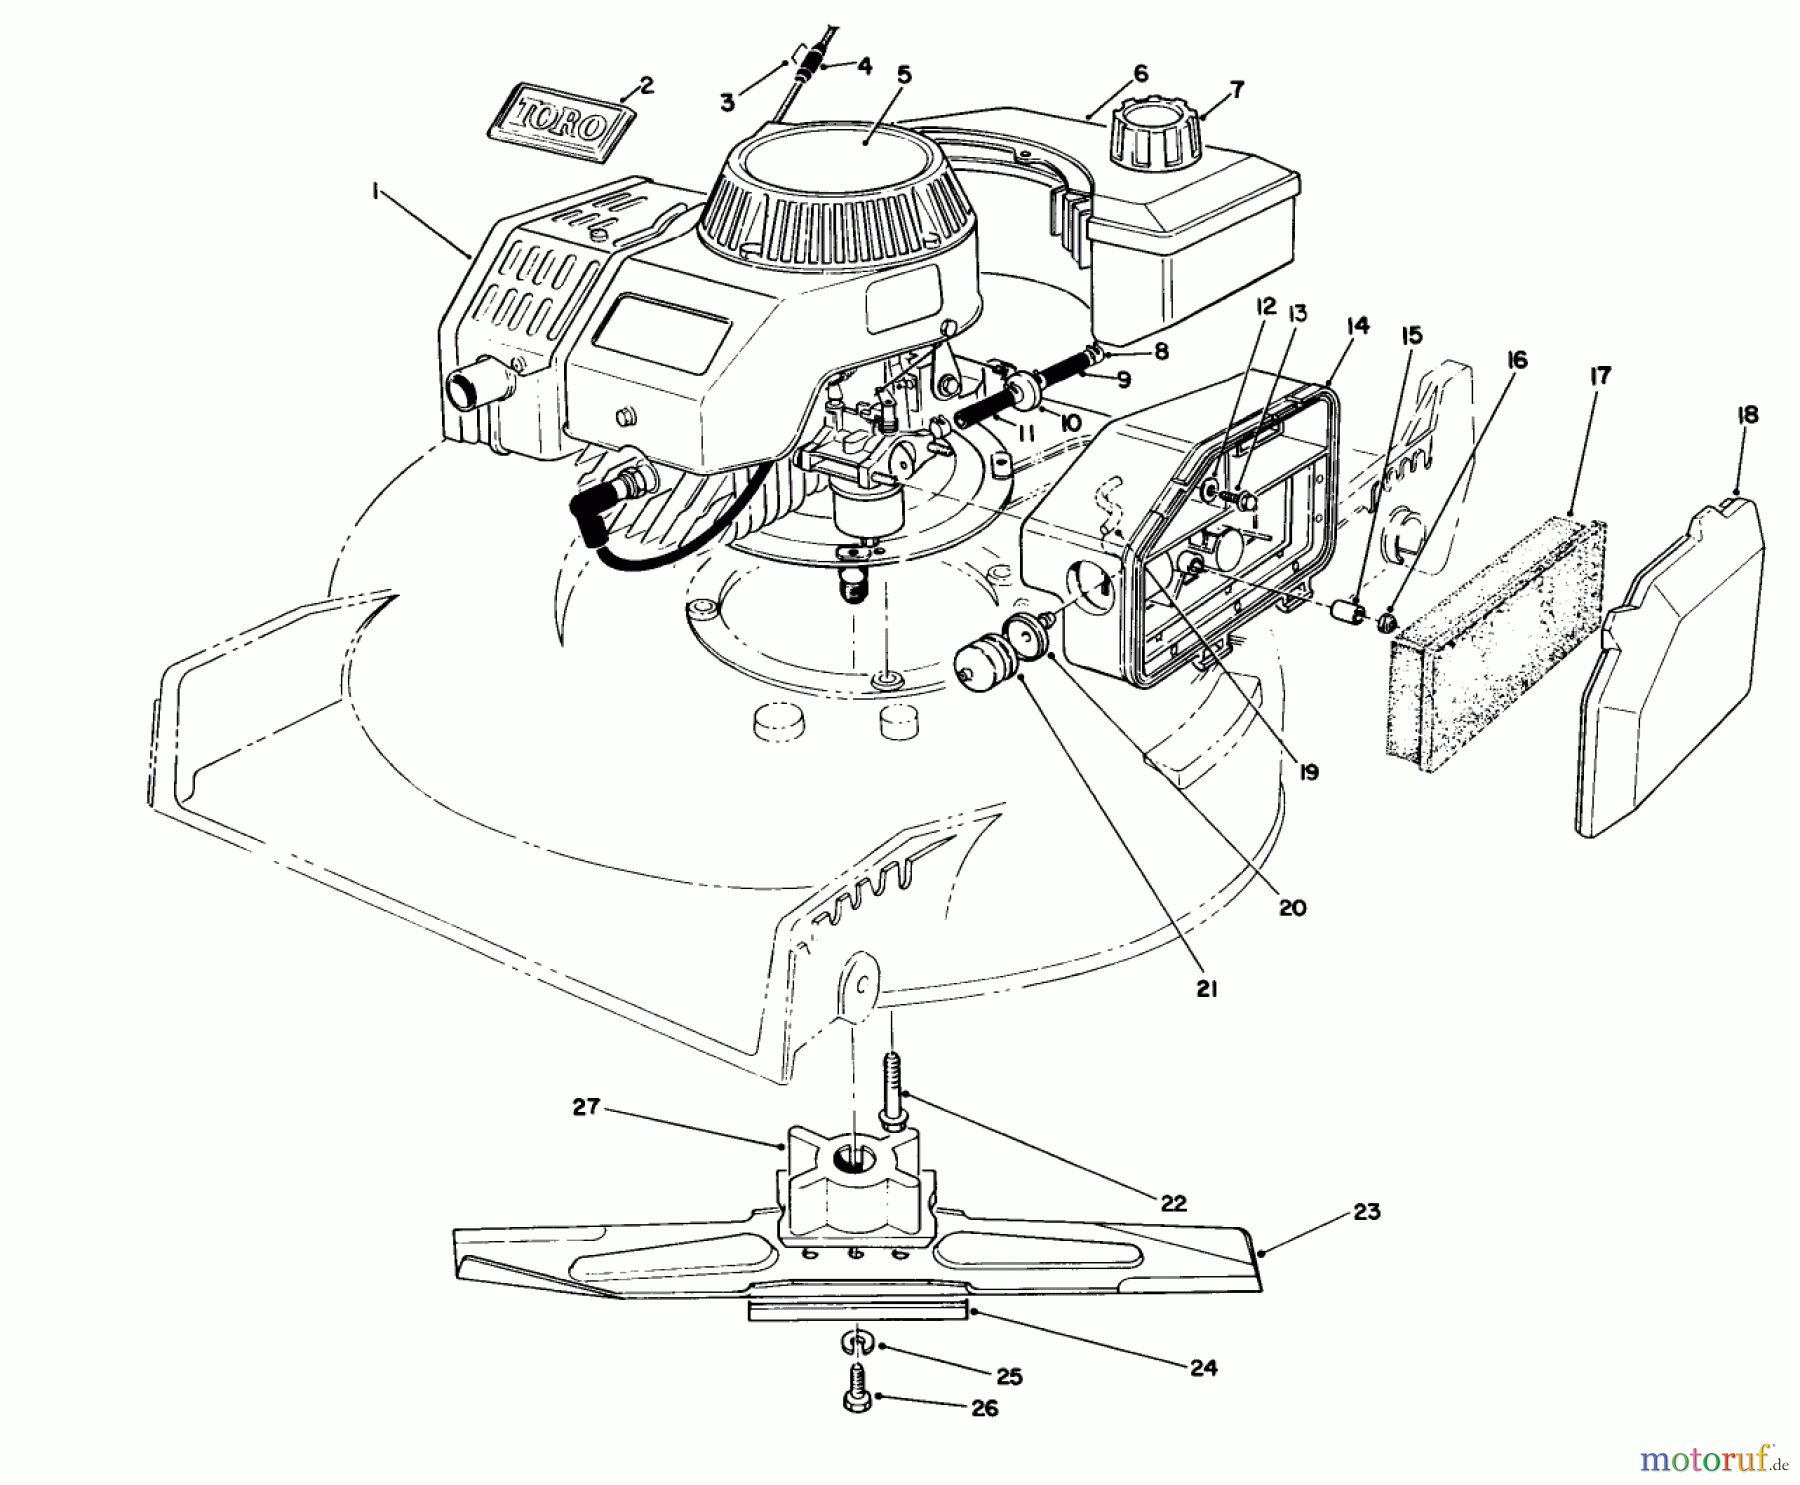  Toro Neu Mowers, Walk-Behind Seite 1 20326 - Toro Lawnmower, 1992 (2000001-2999999) ENGINE ASSEMBLY